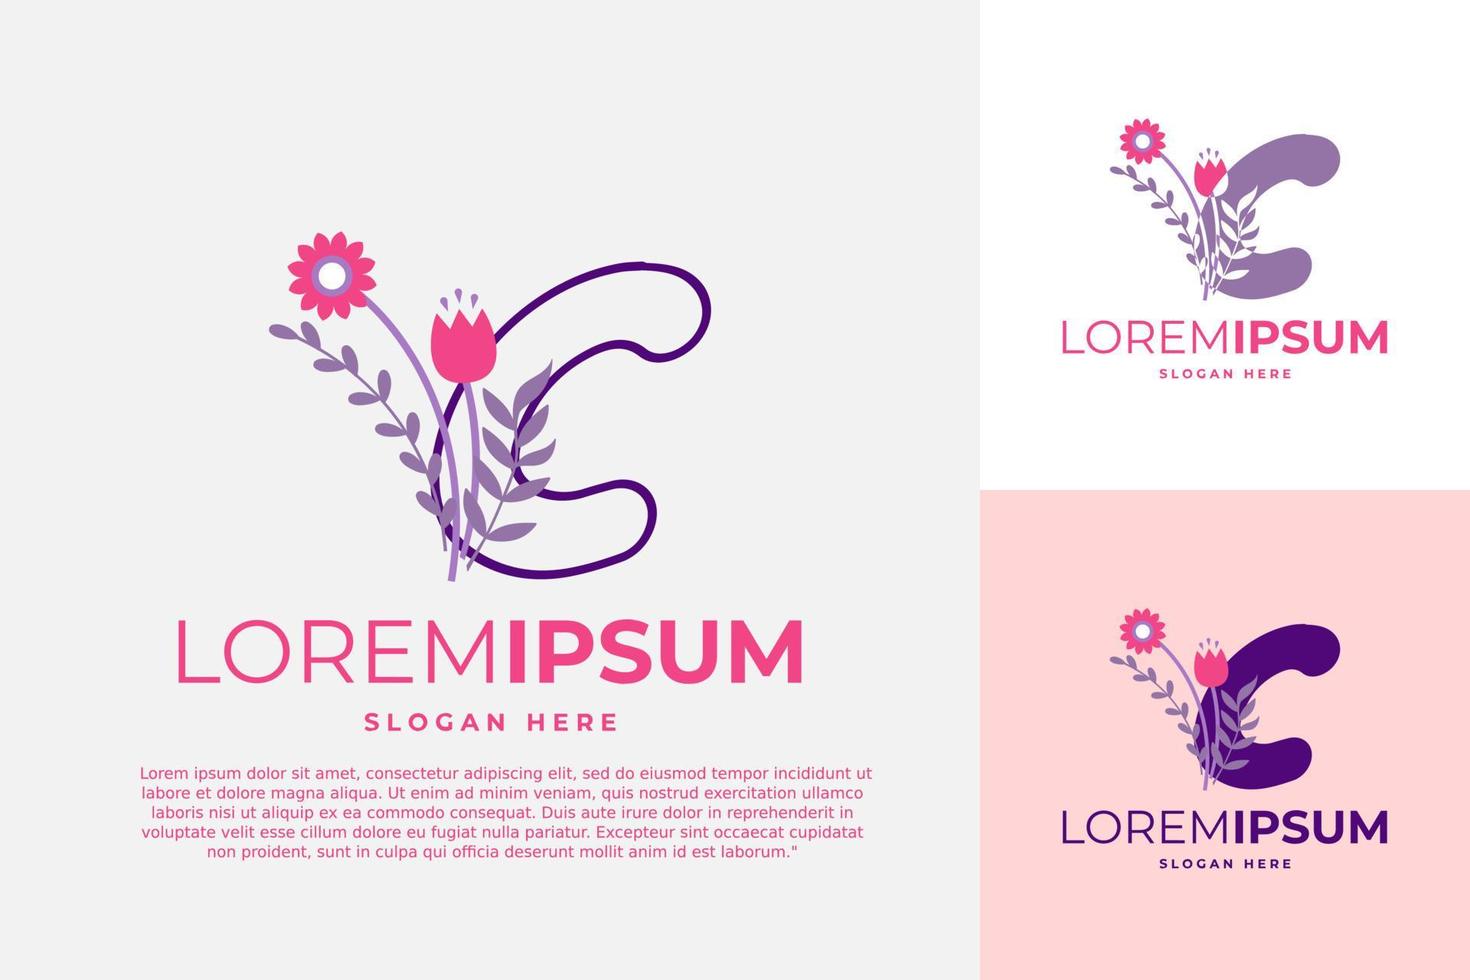 lettre c logo design modèle vectoriel illustration avec des fleurs